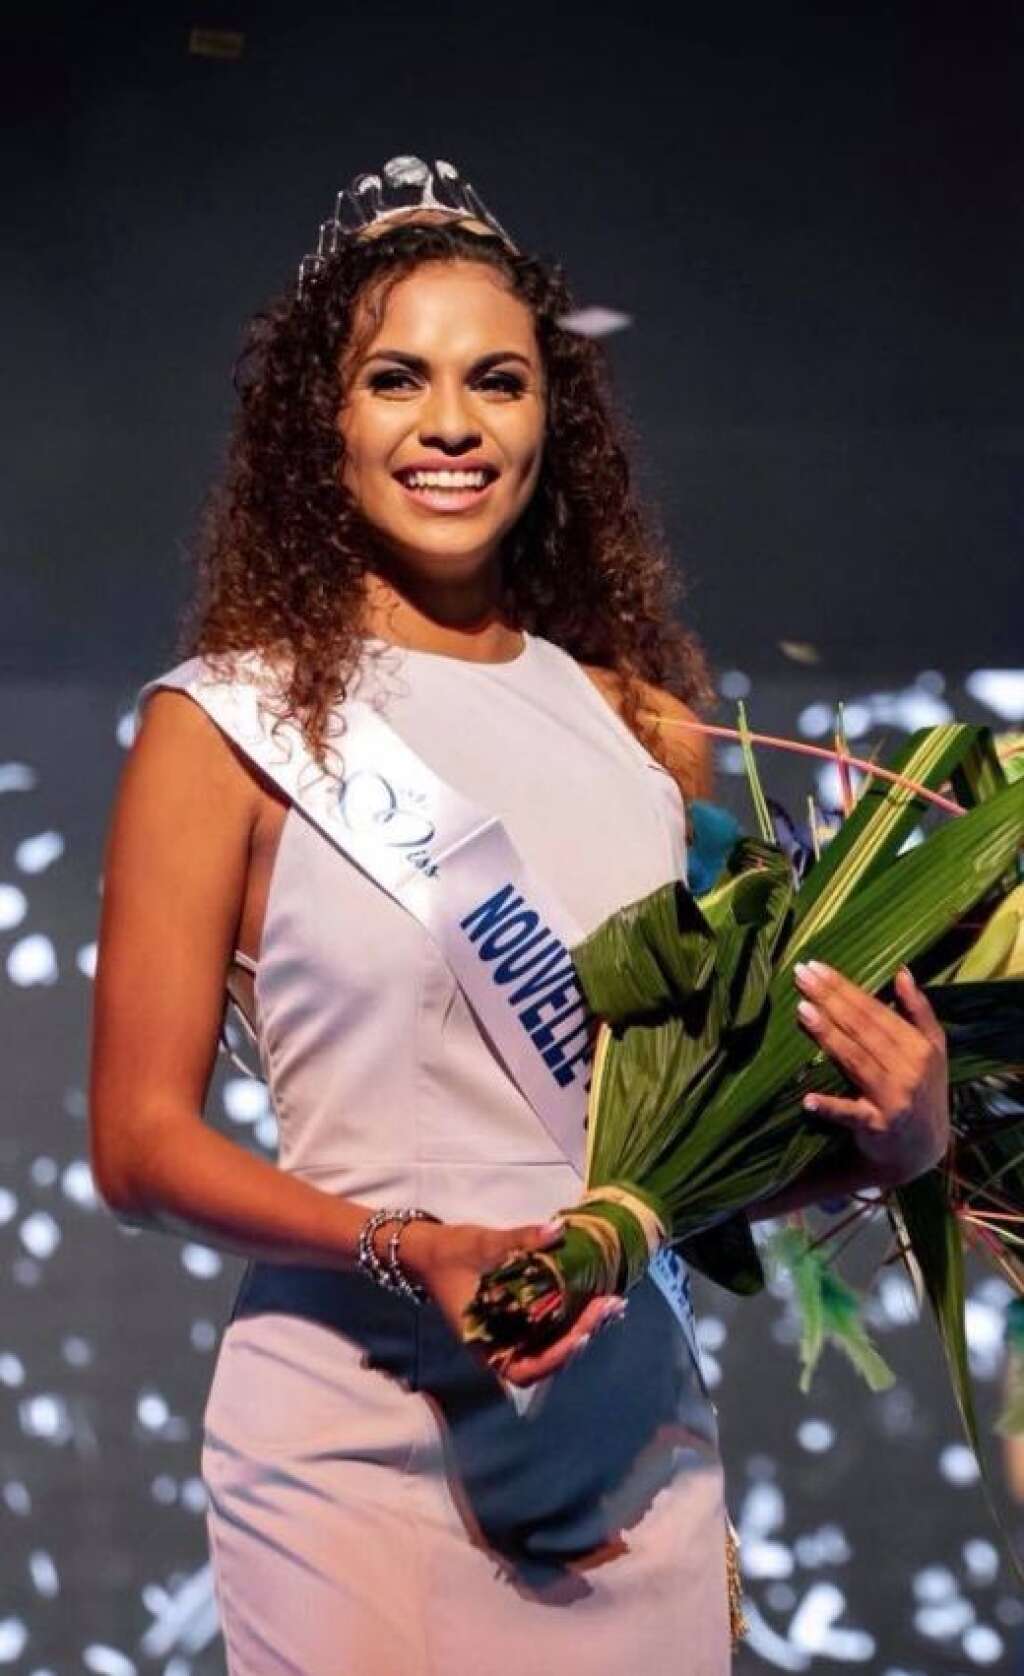 Miss Nouvelle-Calédonie 2019 - Anaïs Toven